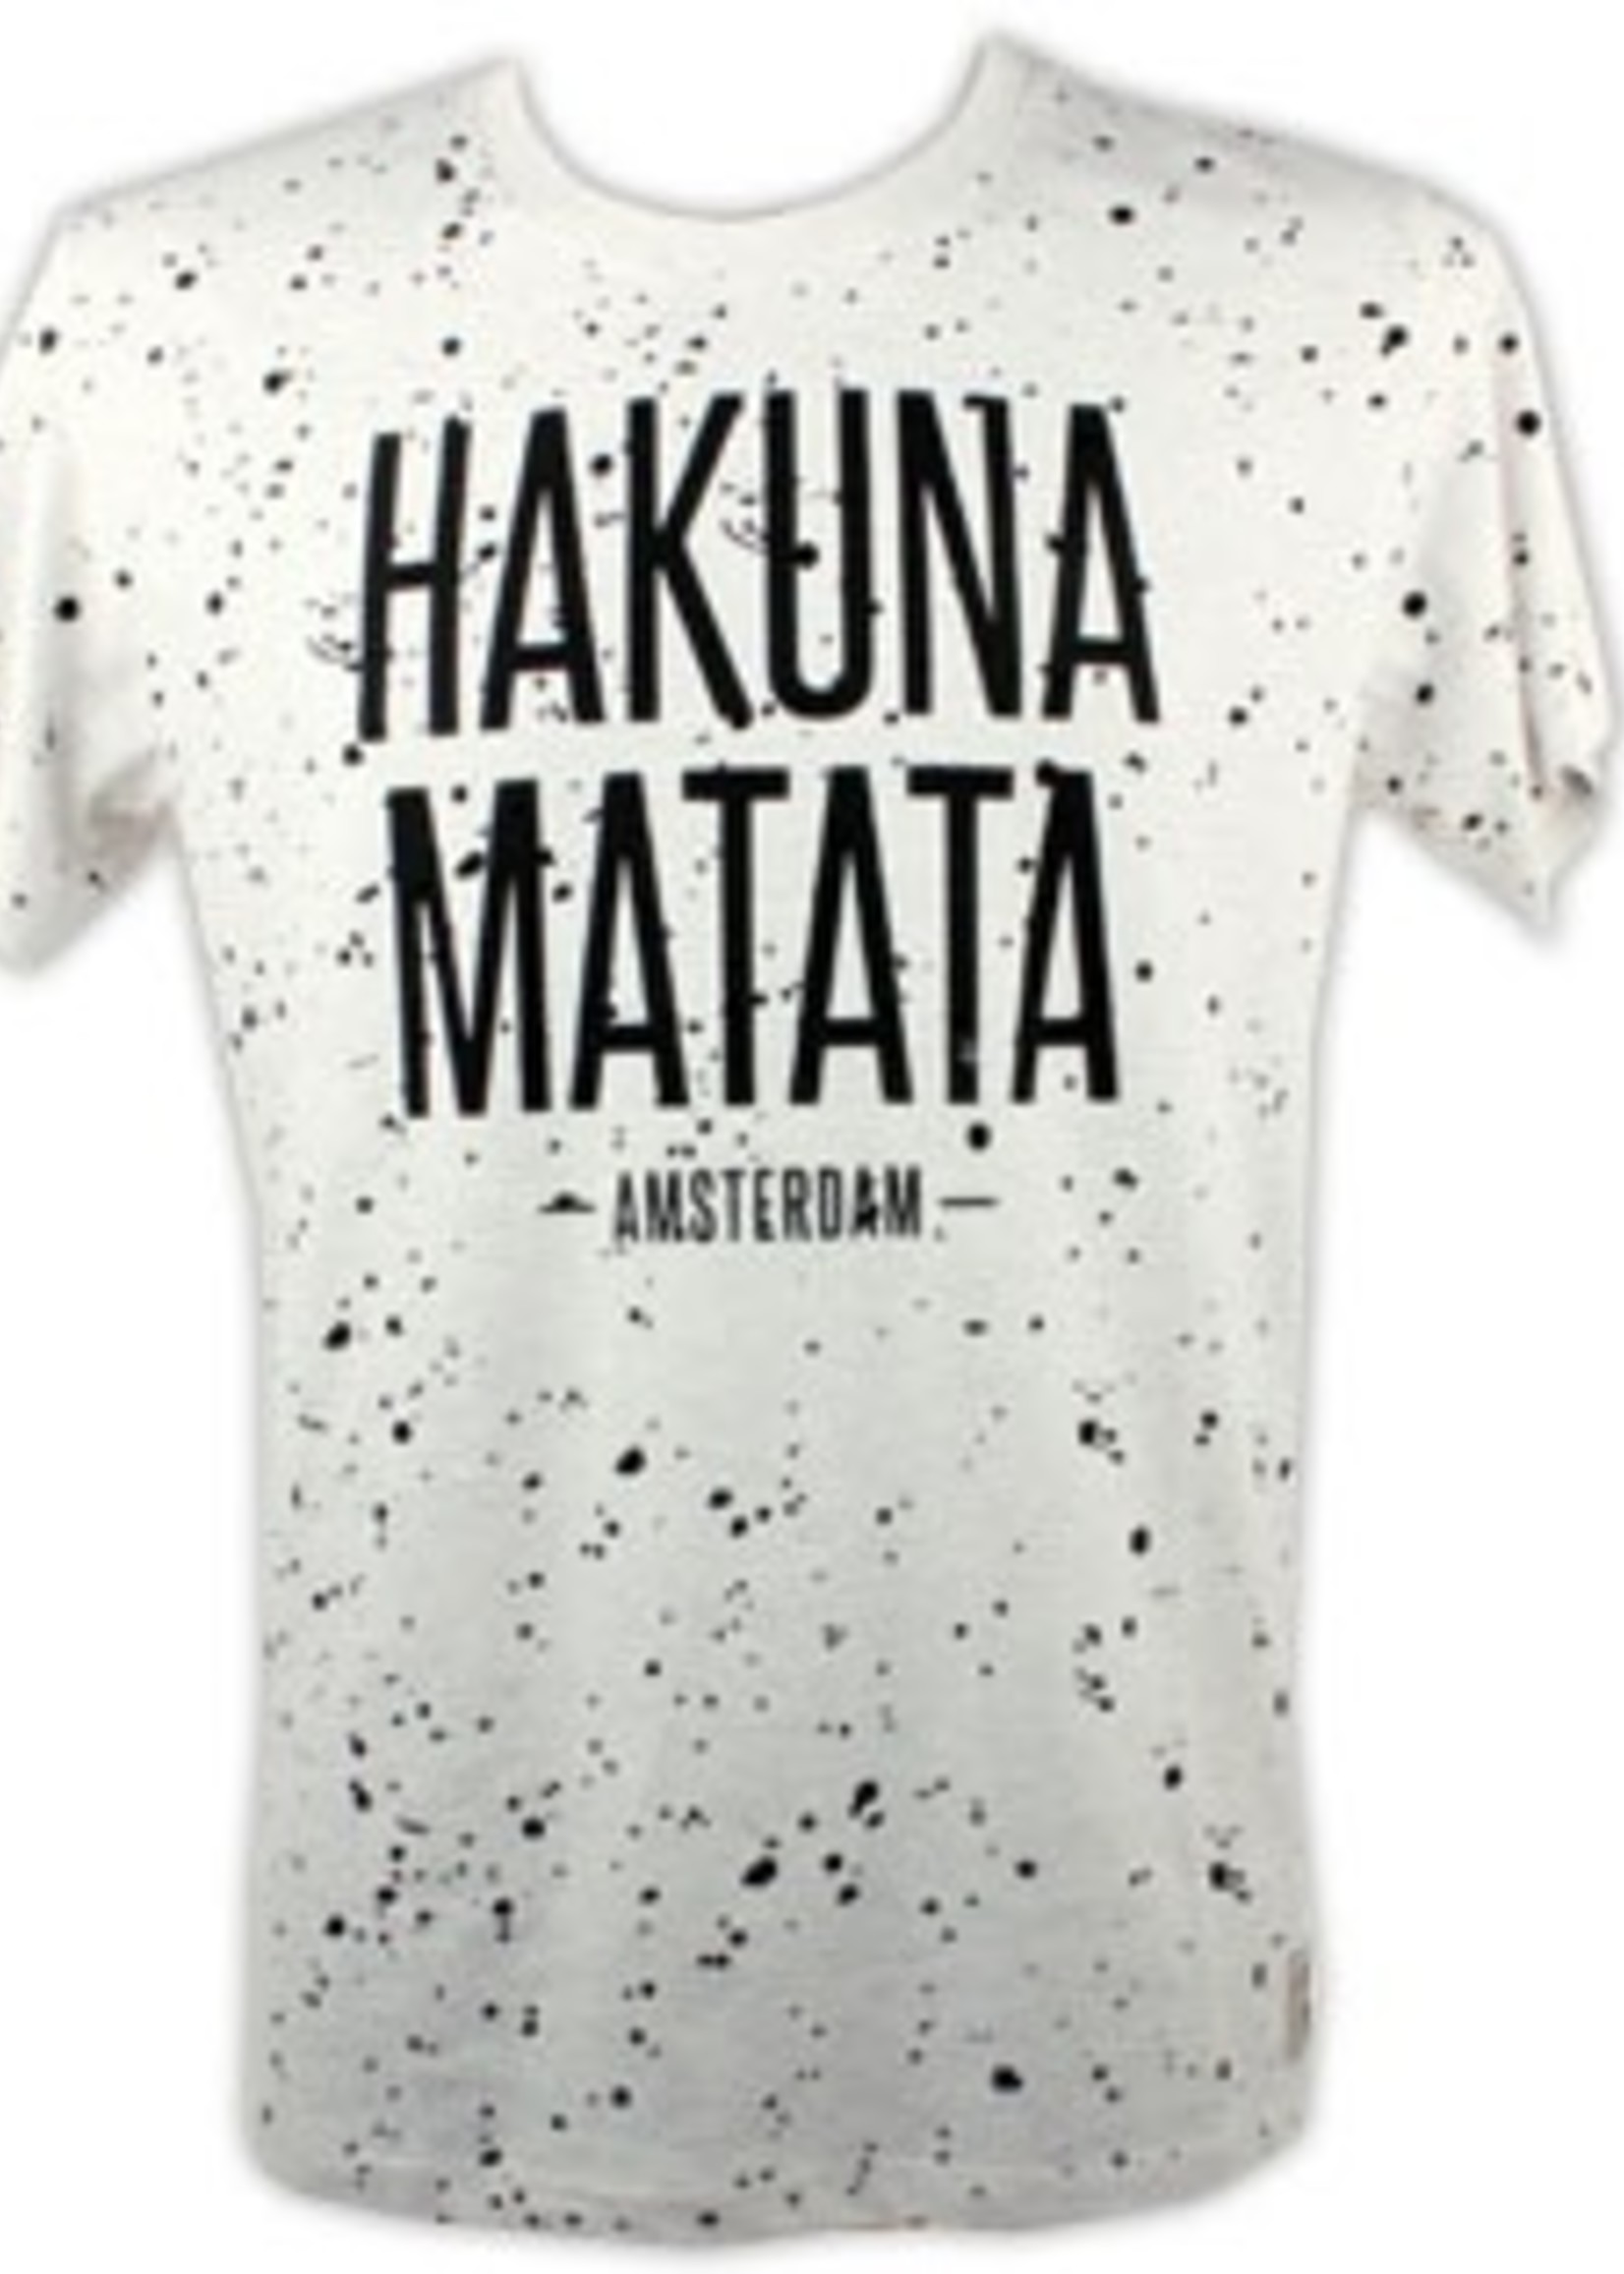 T-shirt Hakuna Matata Wit/Zwart